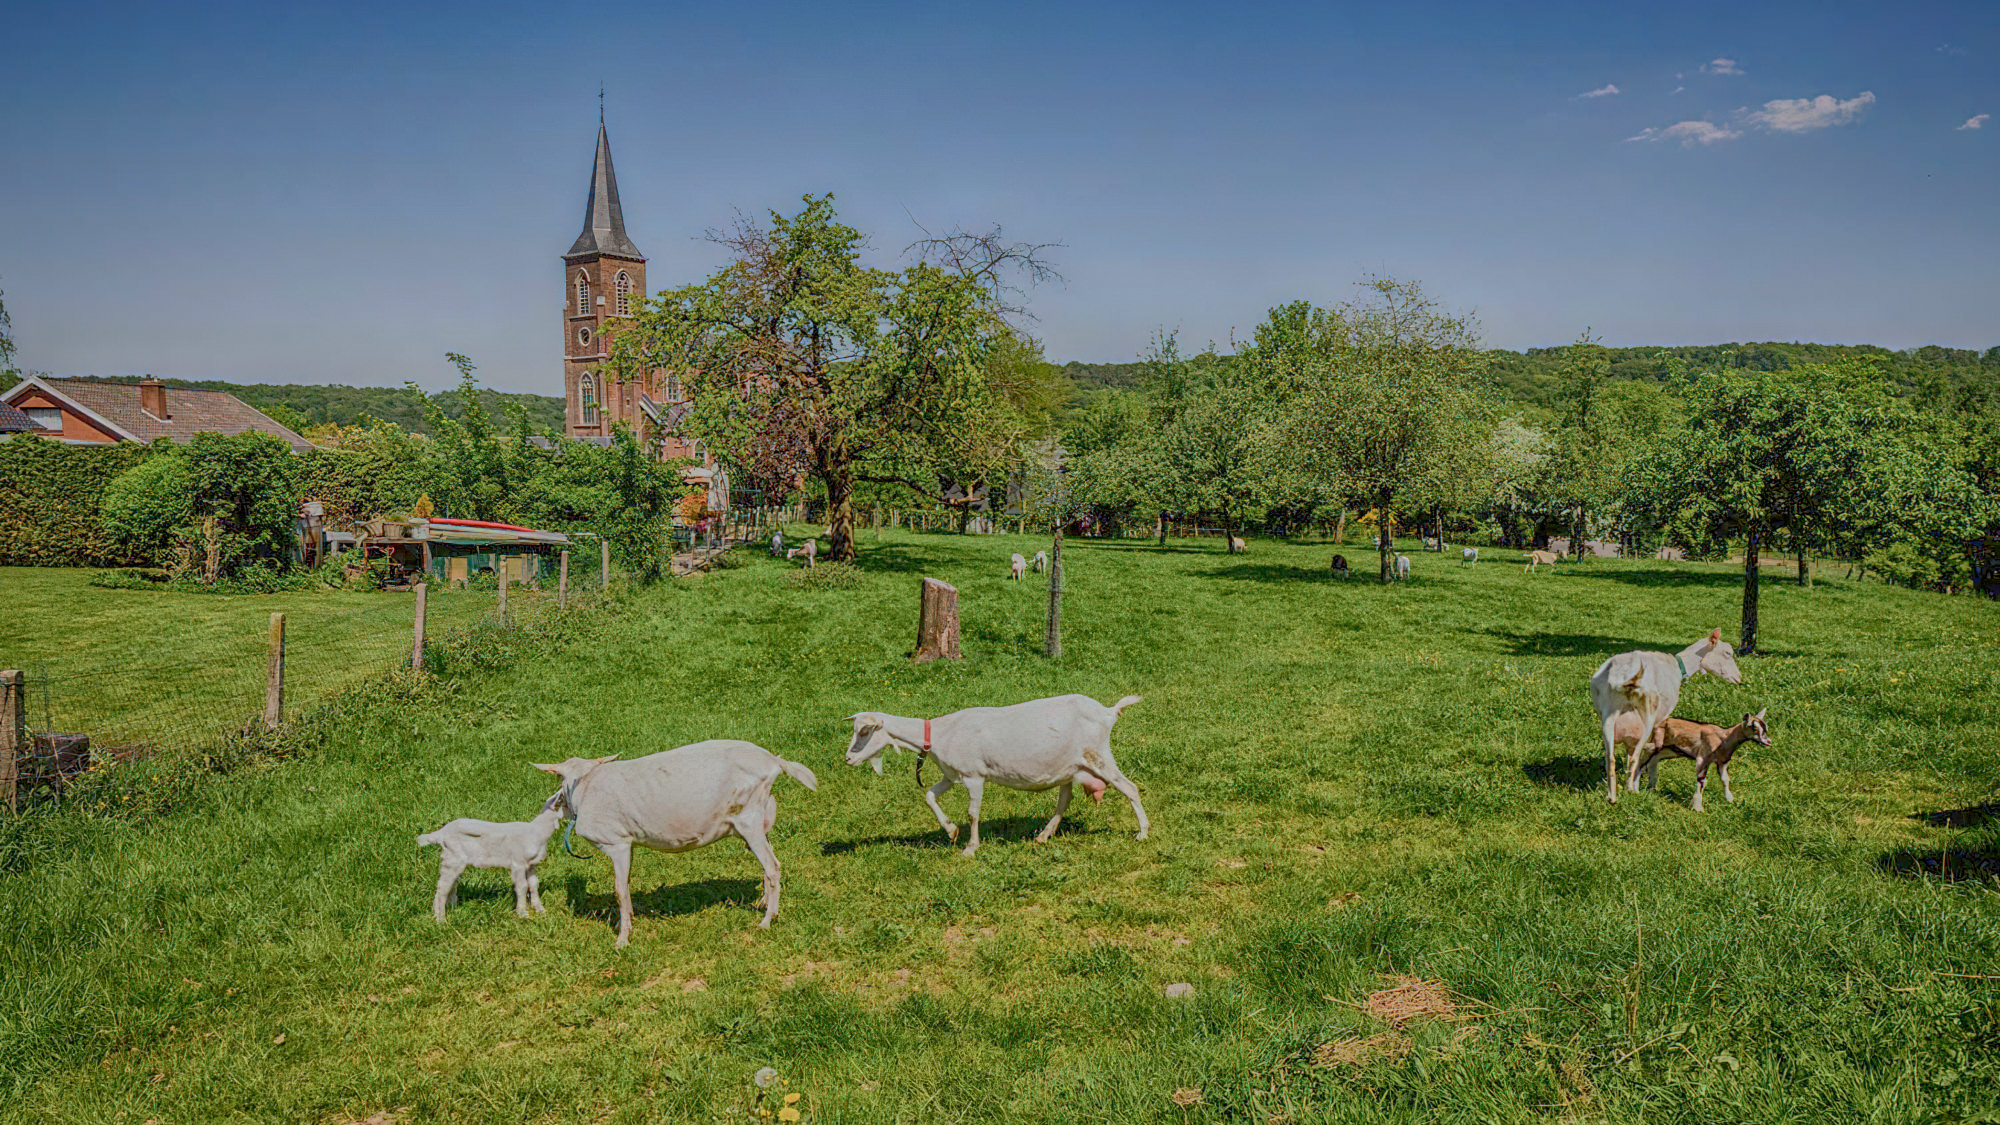 Les chèvres paissent dans le pré derrière Mostert Hoeve.